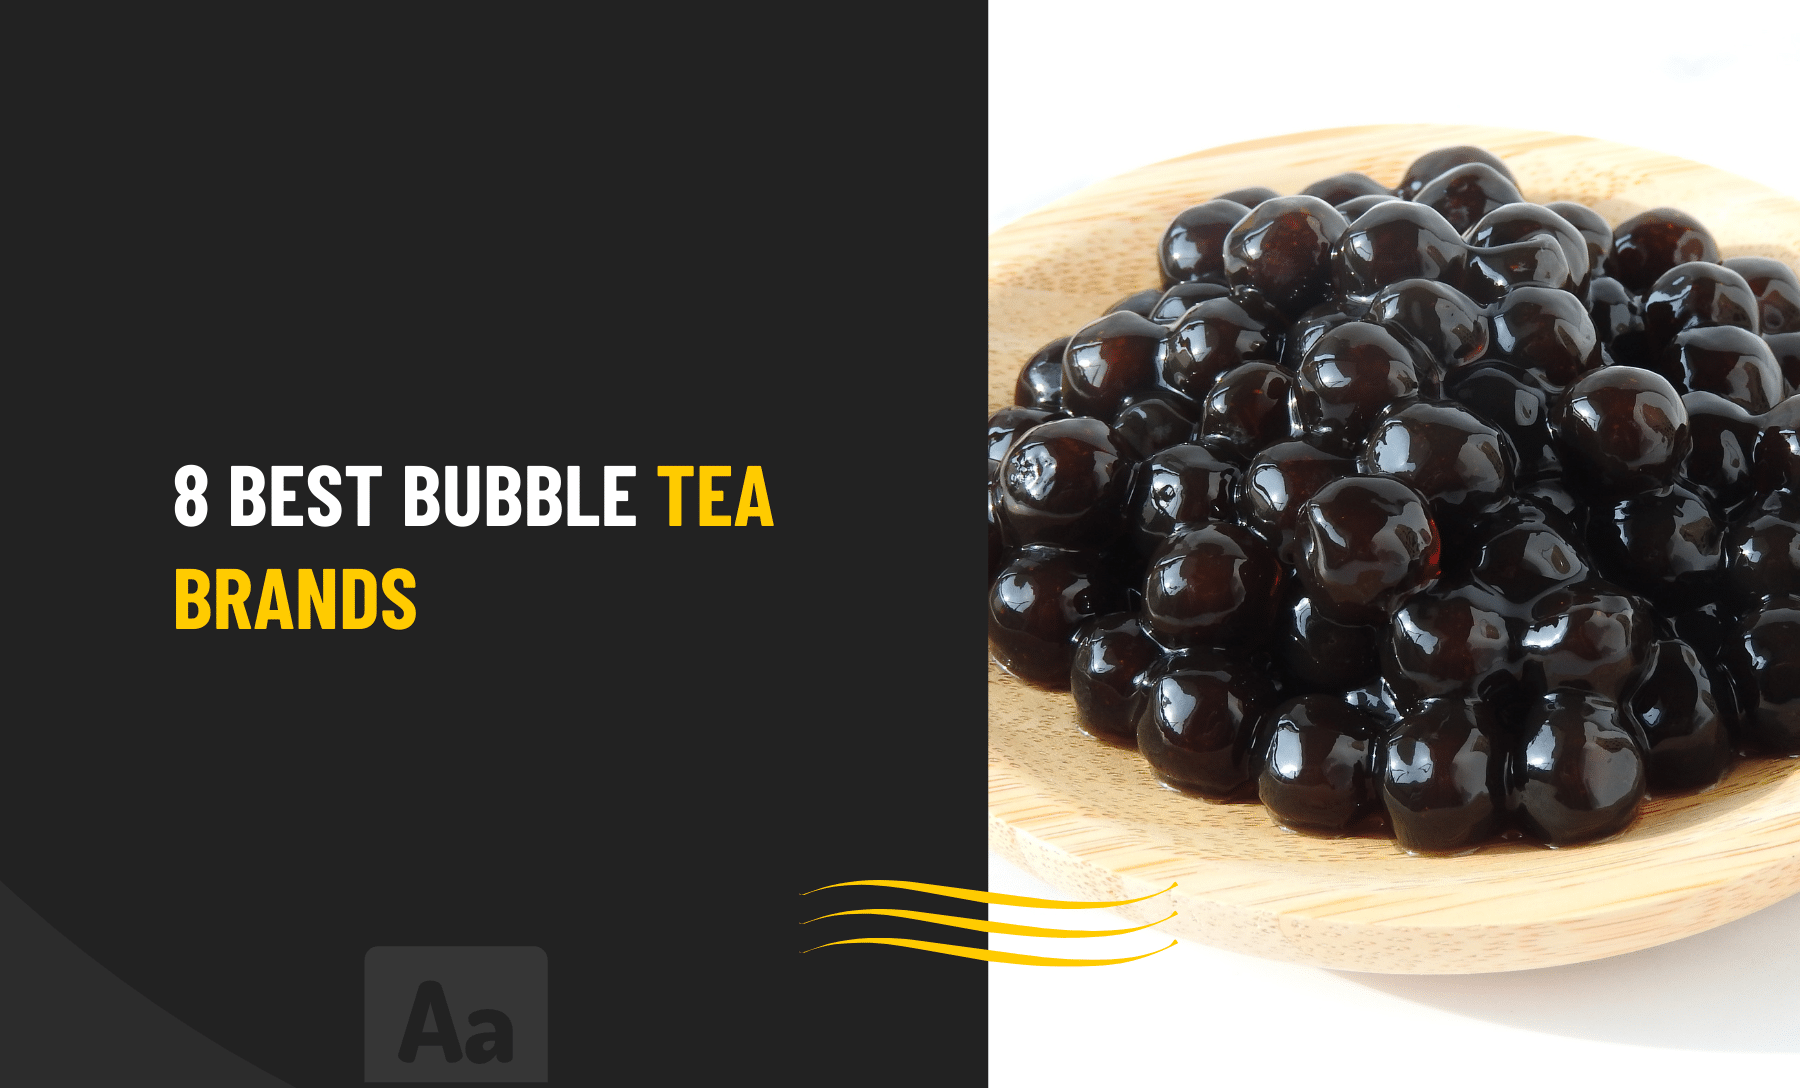 Best Bubble Tea brands